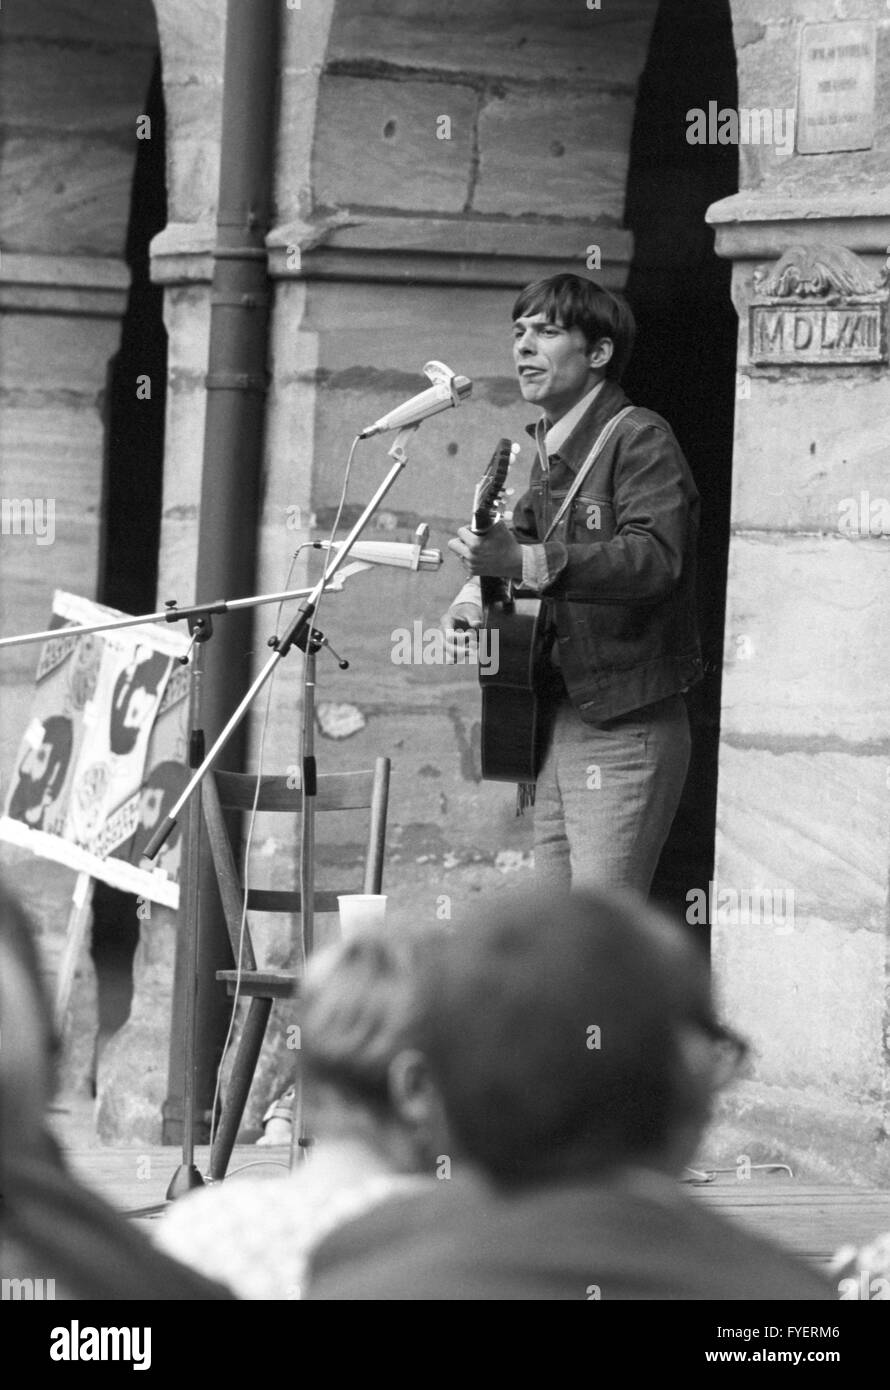 Reinhard Mey chanteuse durant sa performance. Les étudiants de l'université de Erlangen-Nuremberg célébrer une fête à Altdorf le 13 juillet 1968. Banque D'Images